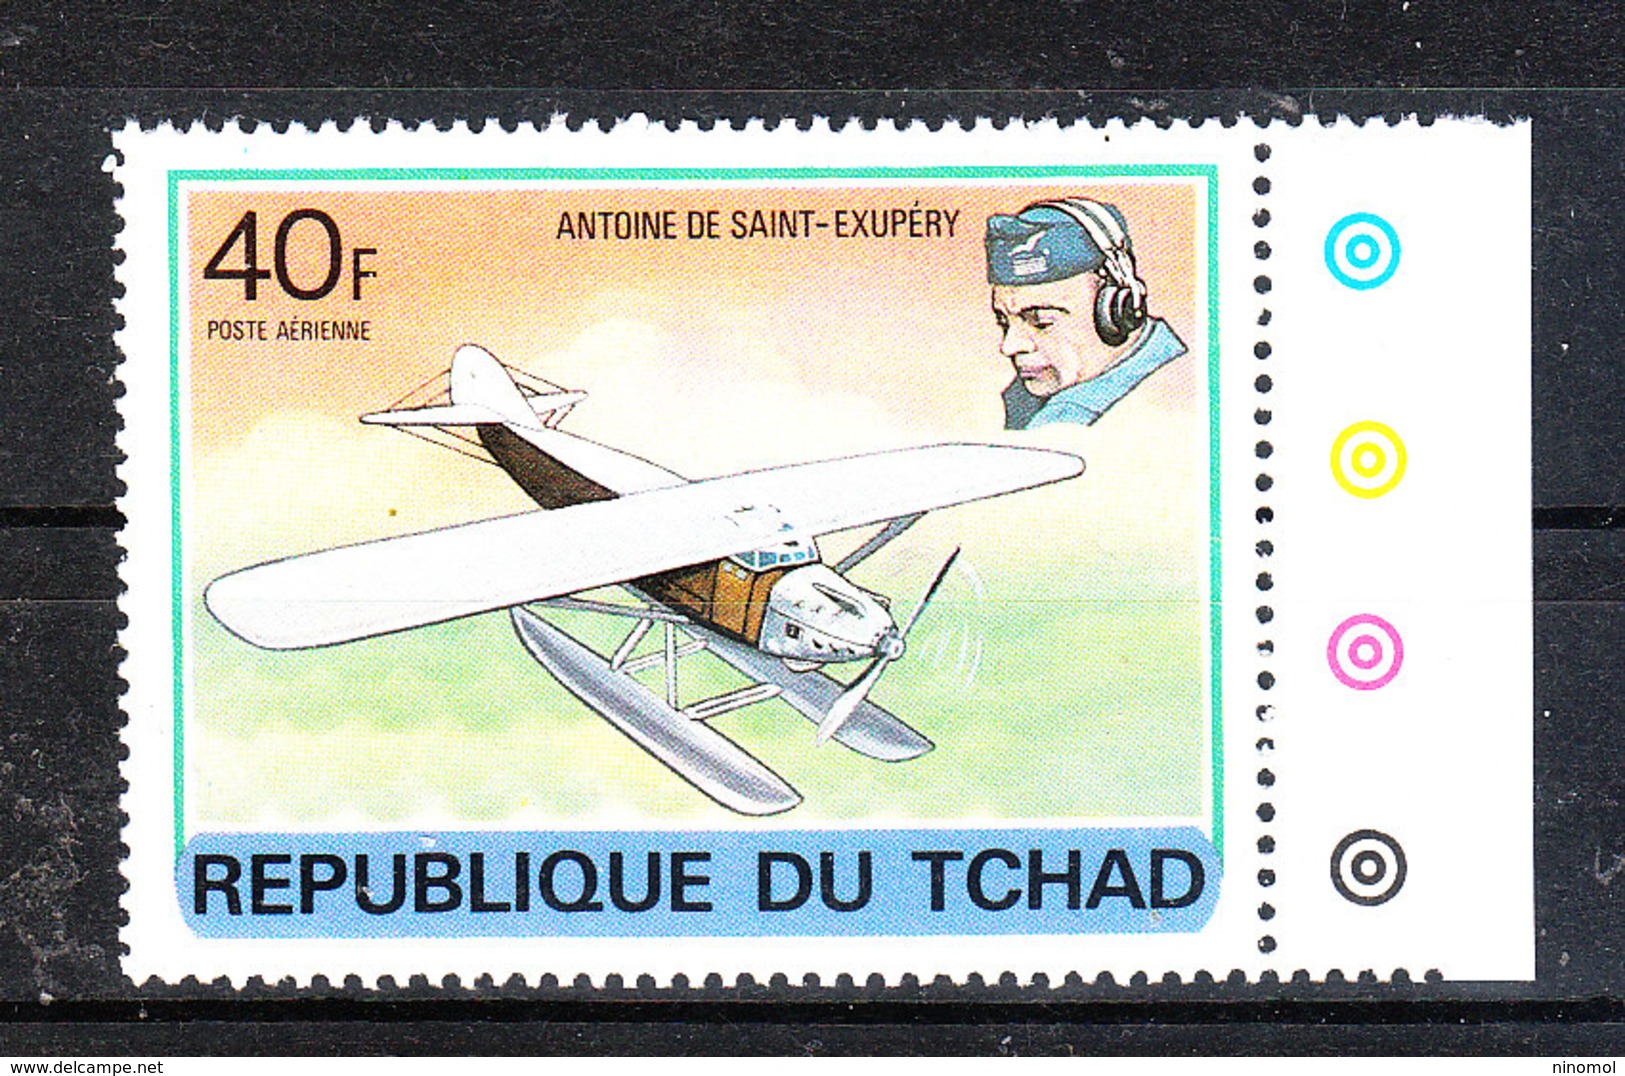 Ciad  Chad  - 1978. Storia Dell' Aviazione. Saint Exuperì E Suo Aereo.Aviation History. Saint Exuperì And His Plane. MNH - Aerei